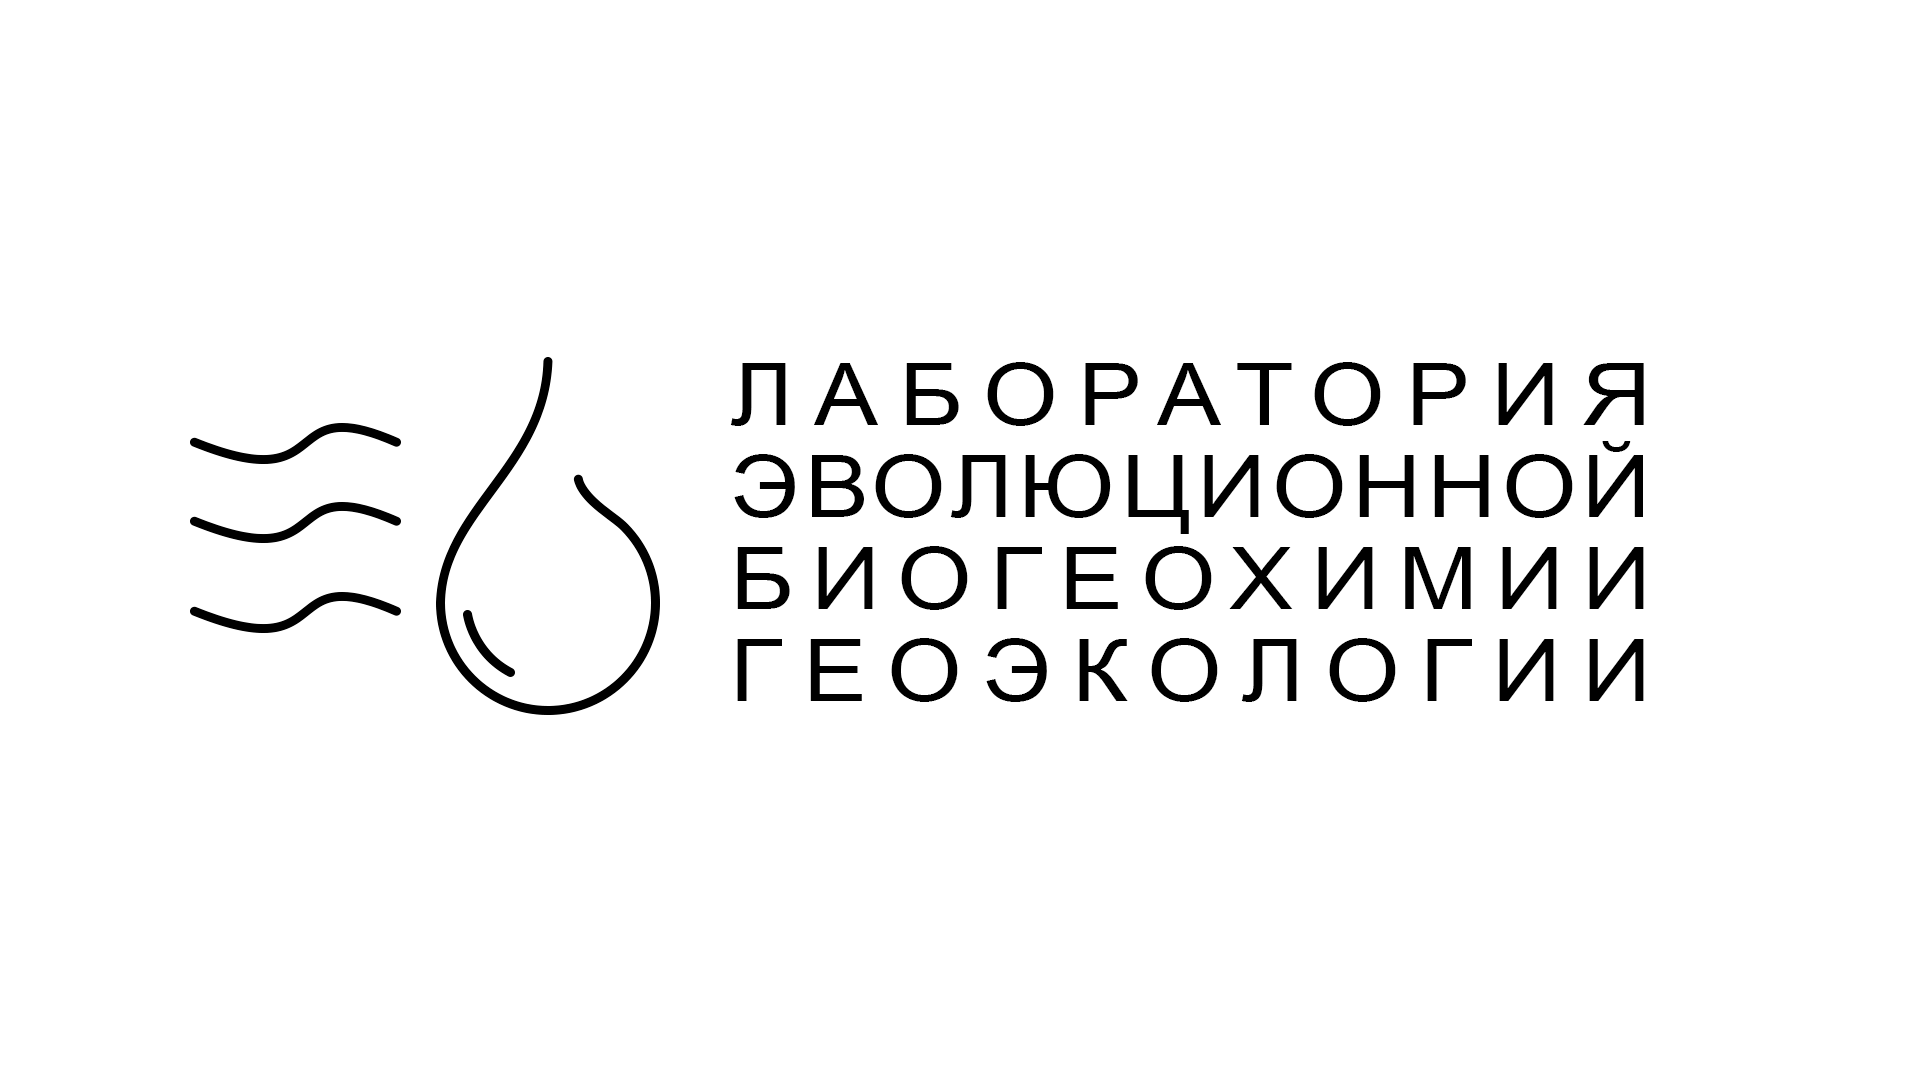 Лого ЛЭБГ 10.png